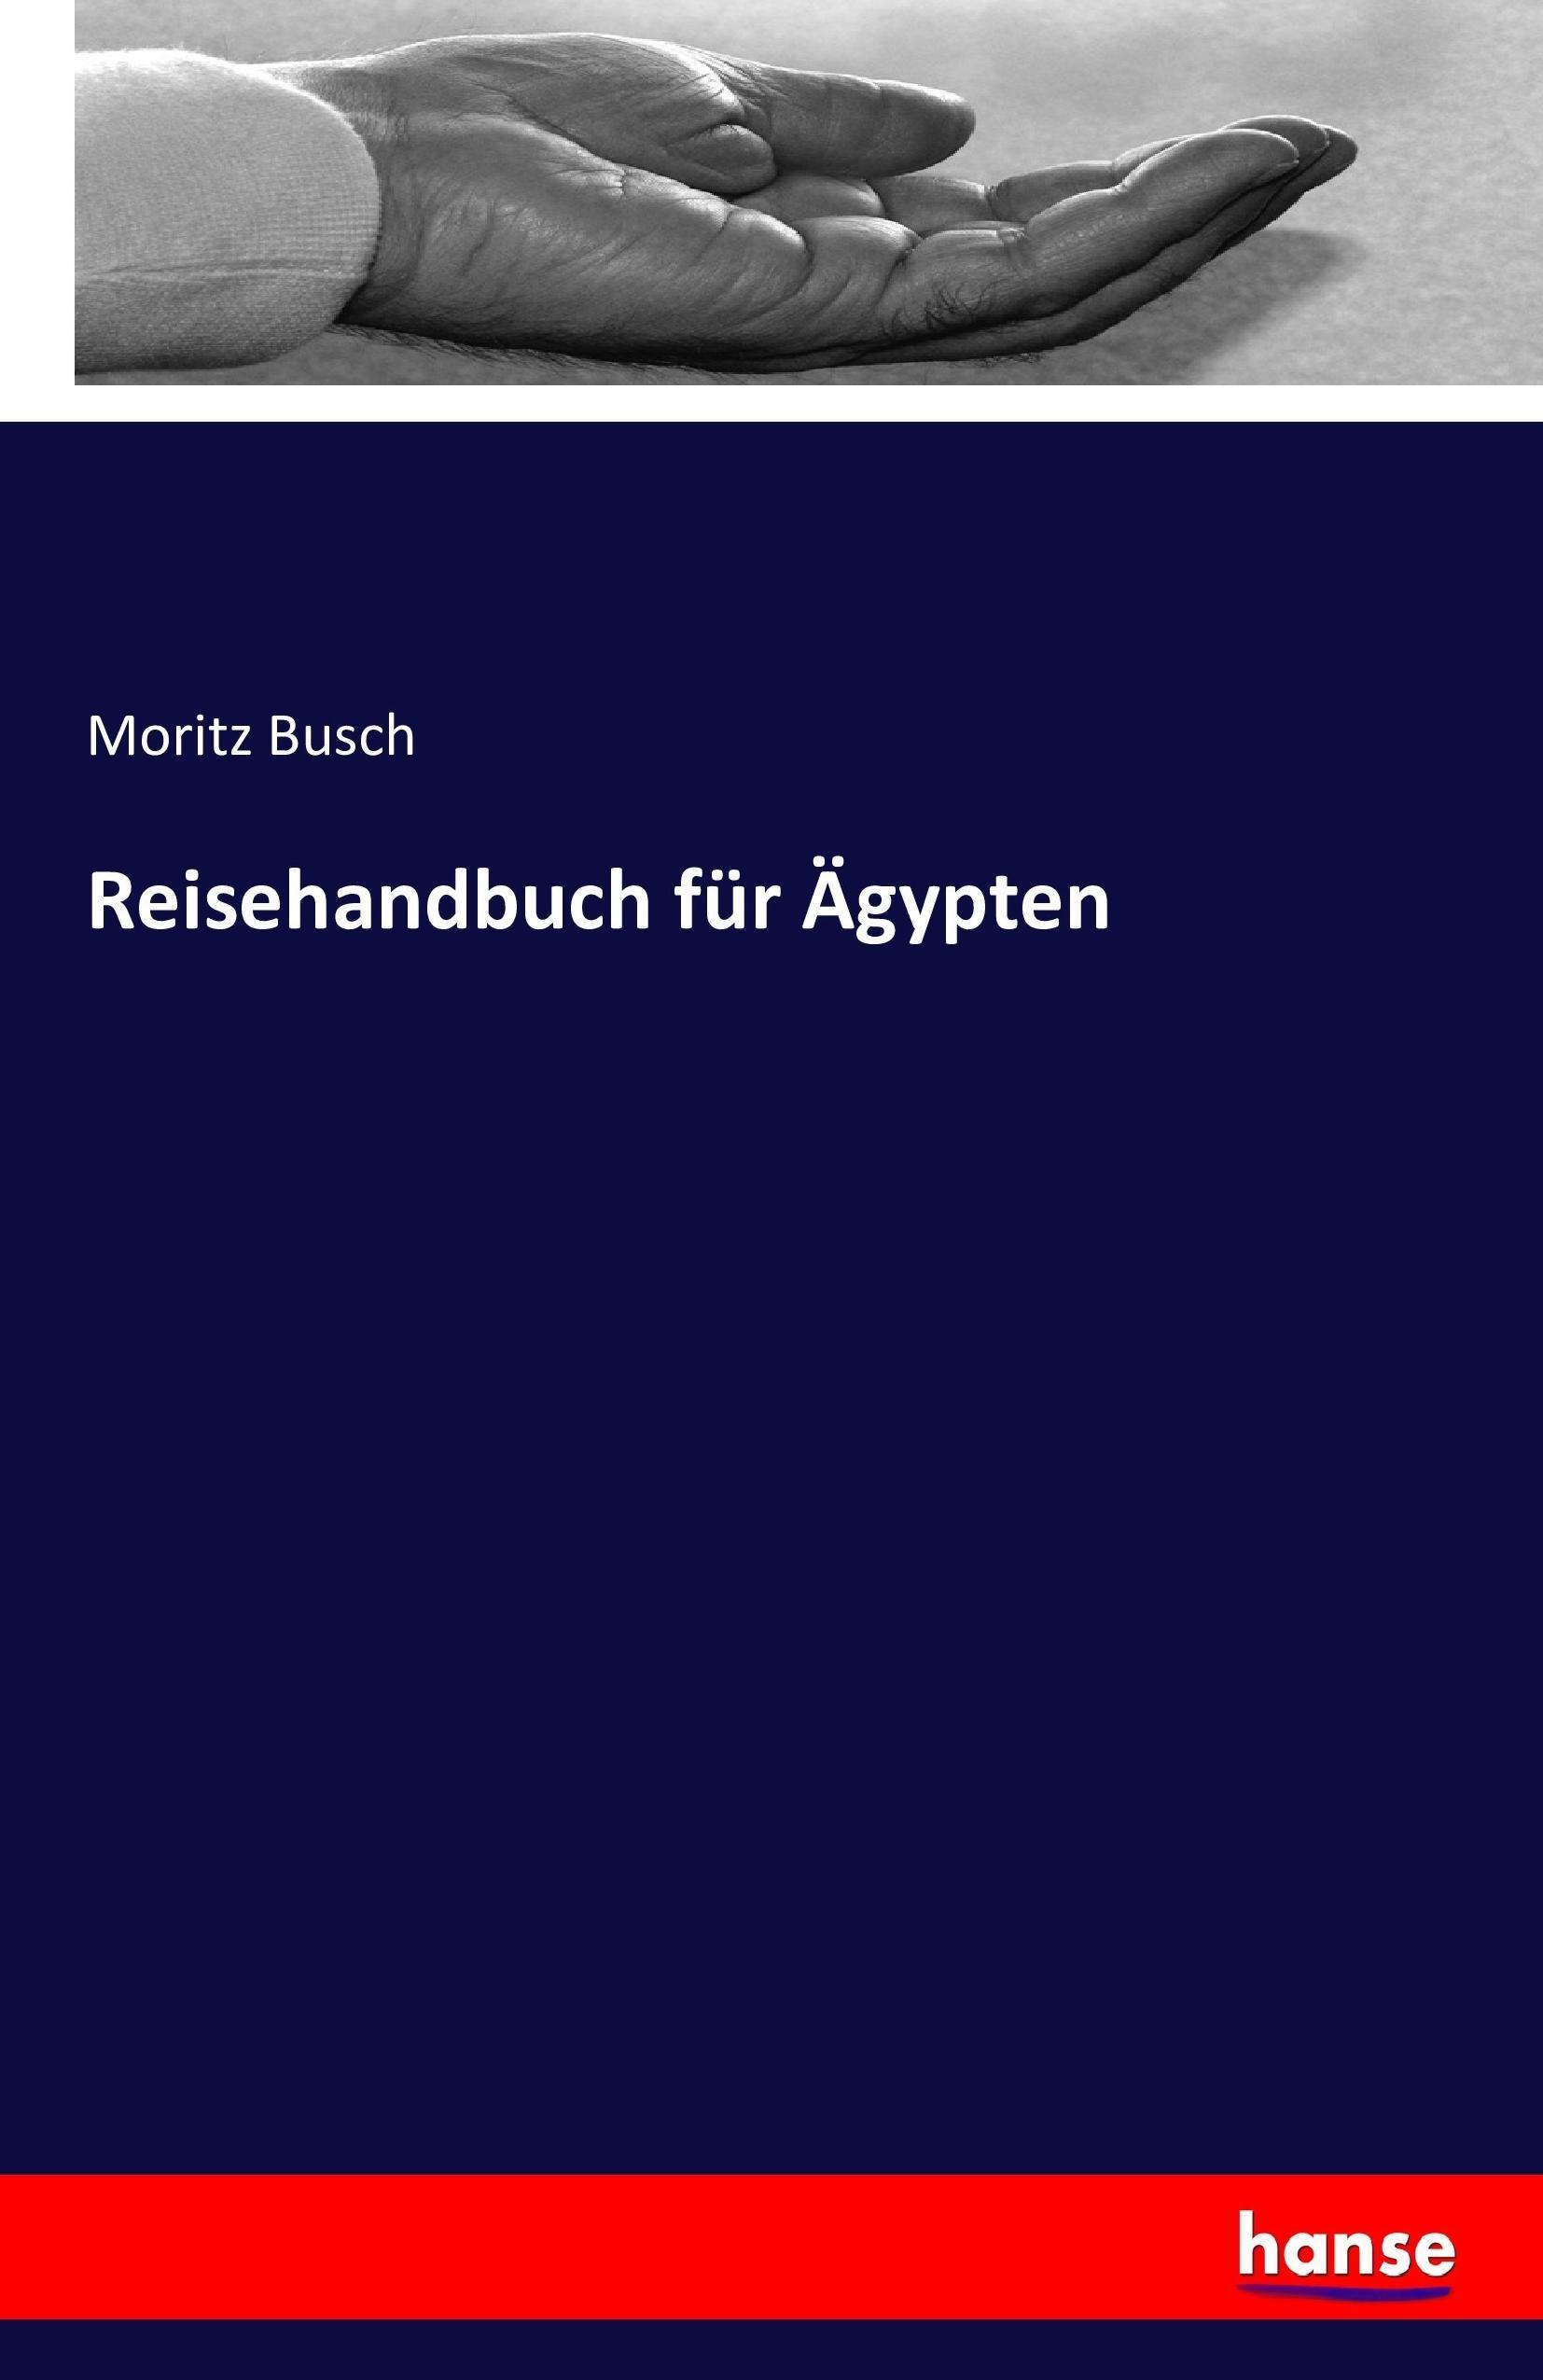 Reisehandbuch fuer Aegypten - Busch, Moritz